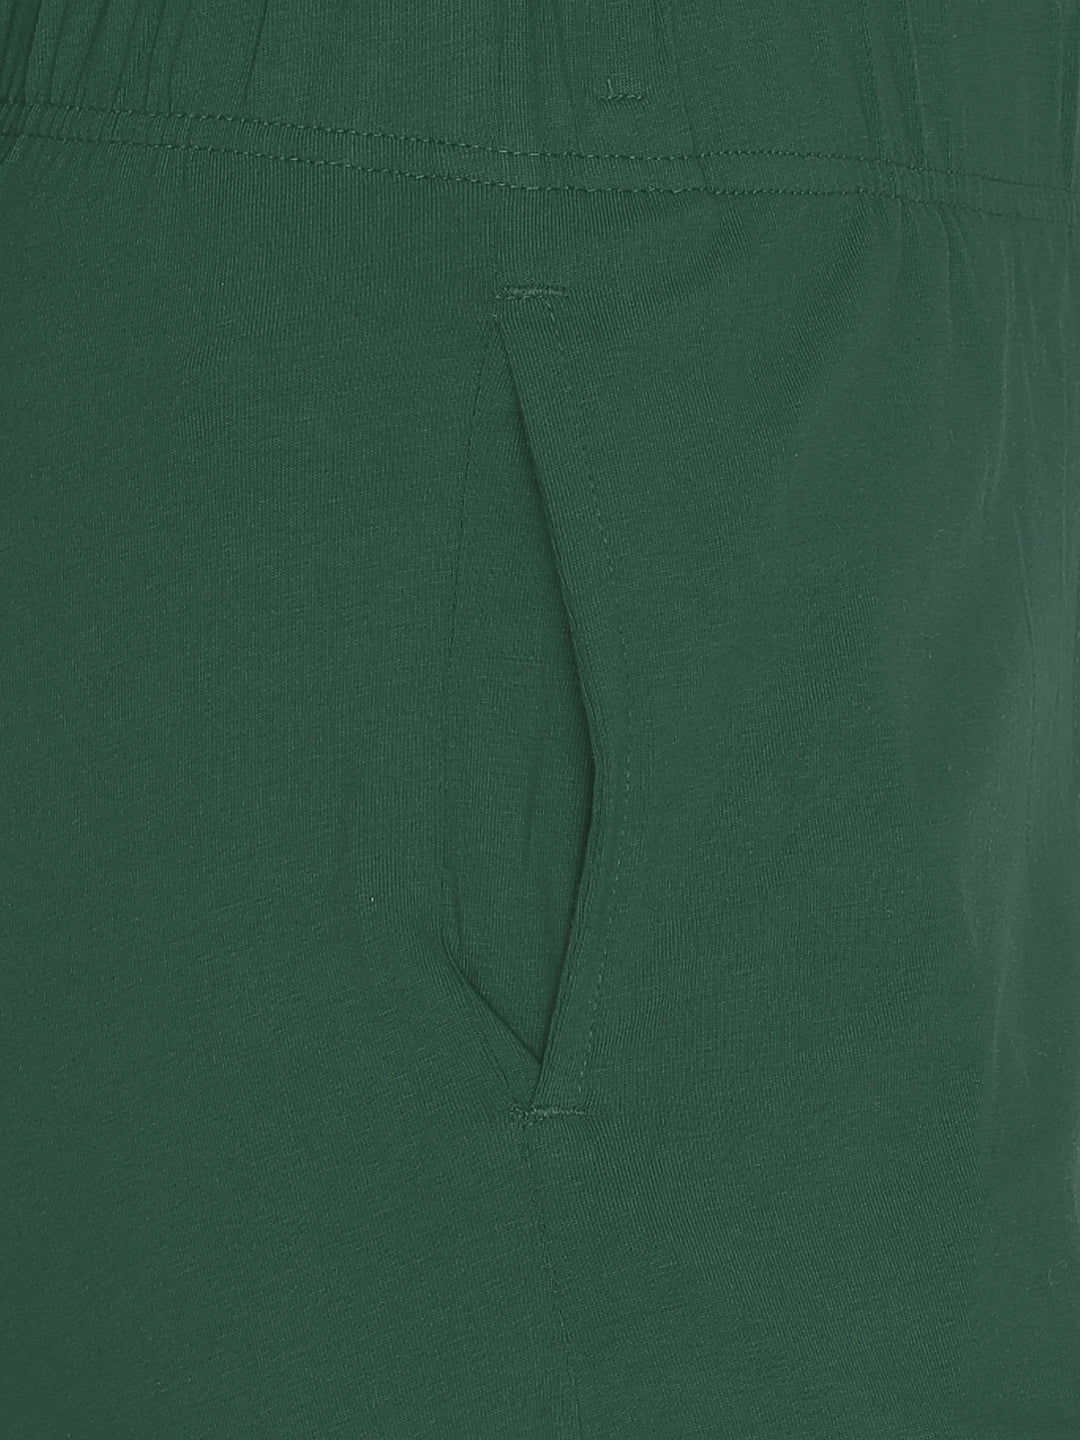 Green kurti pant